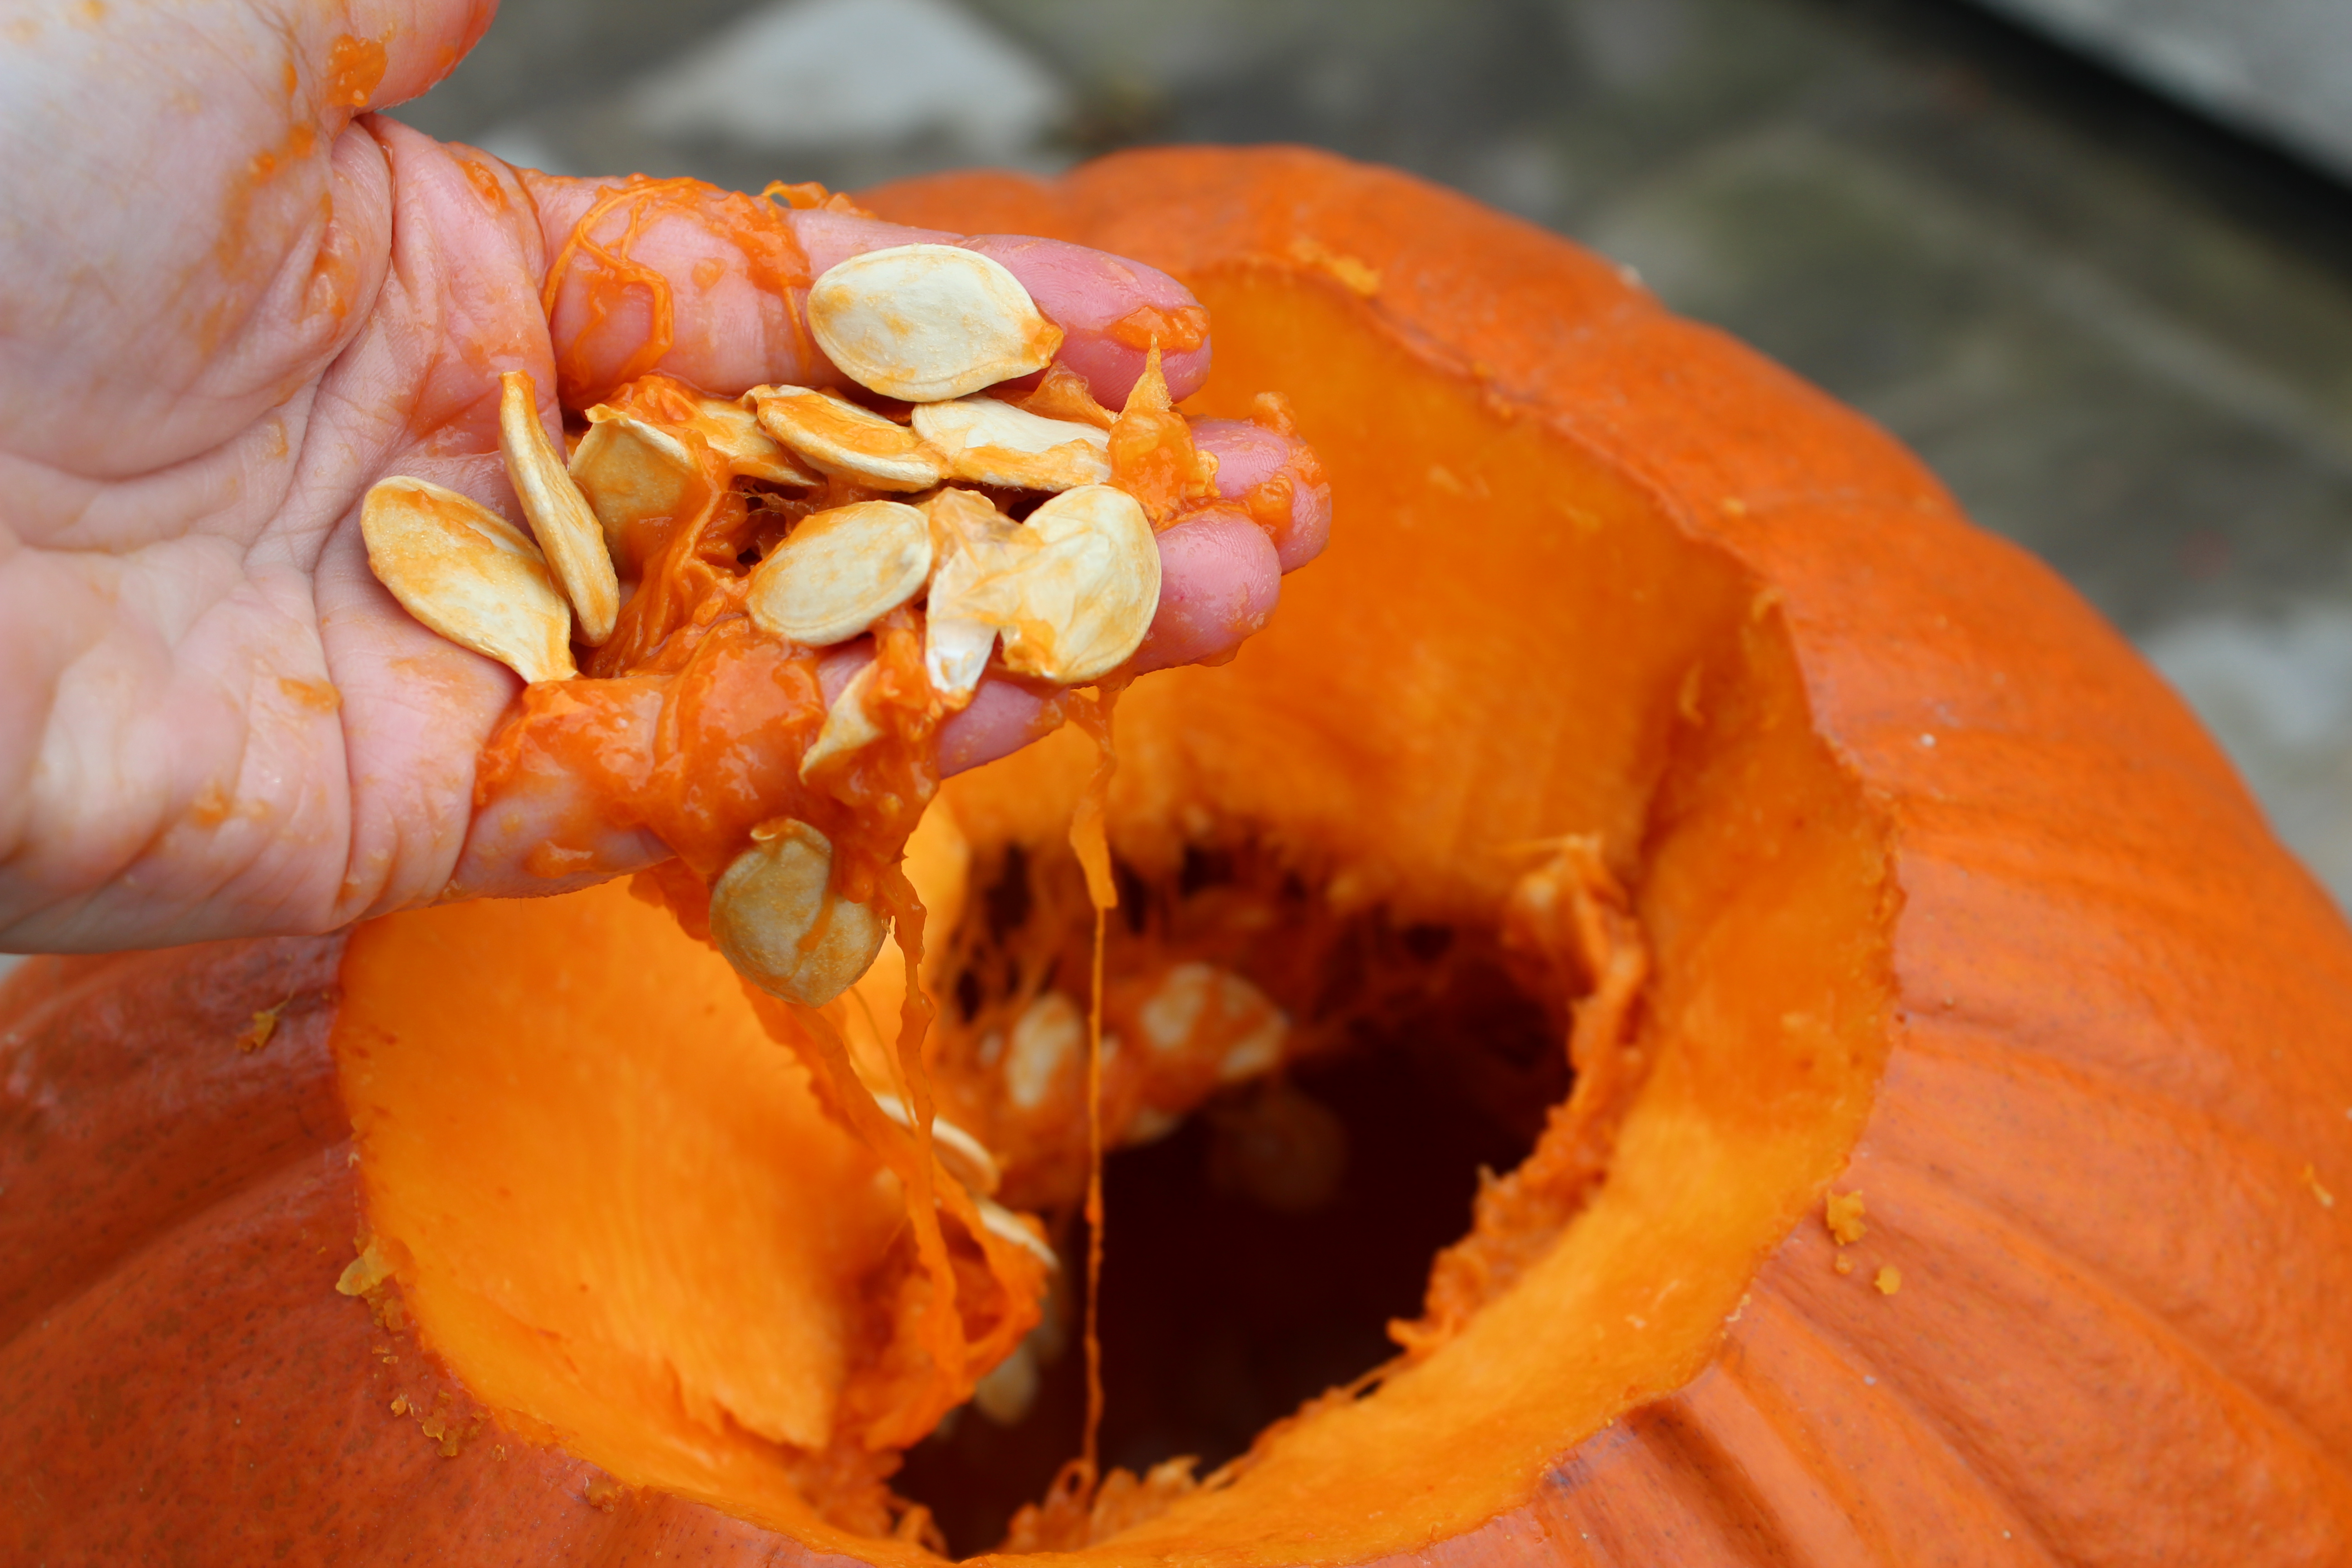 How do you carve a pumpkin? Remove the seeds